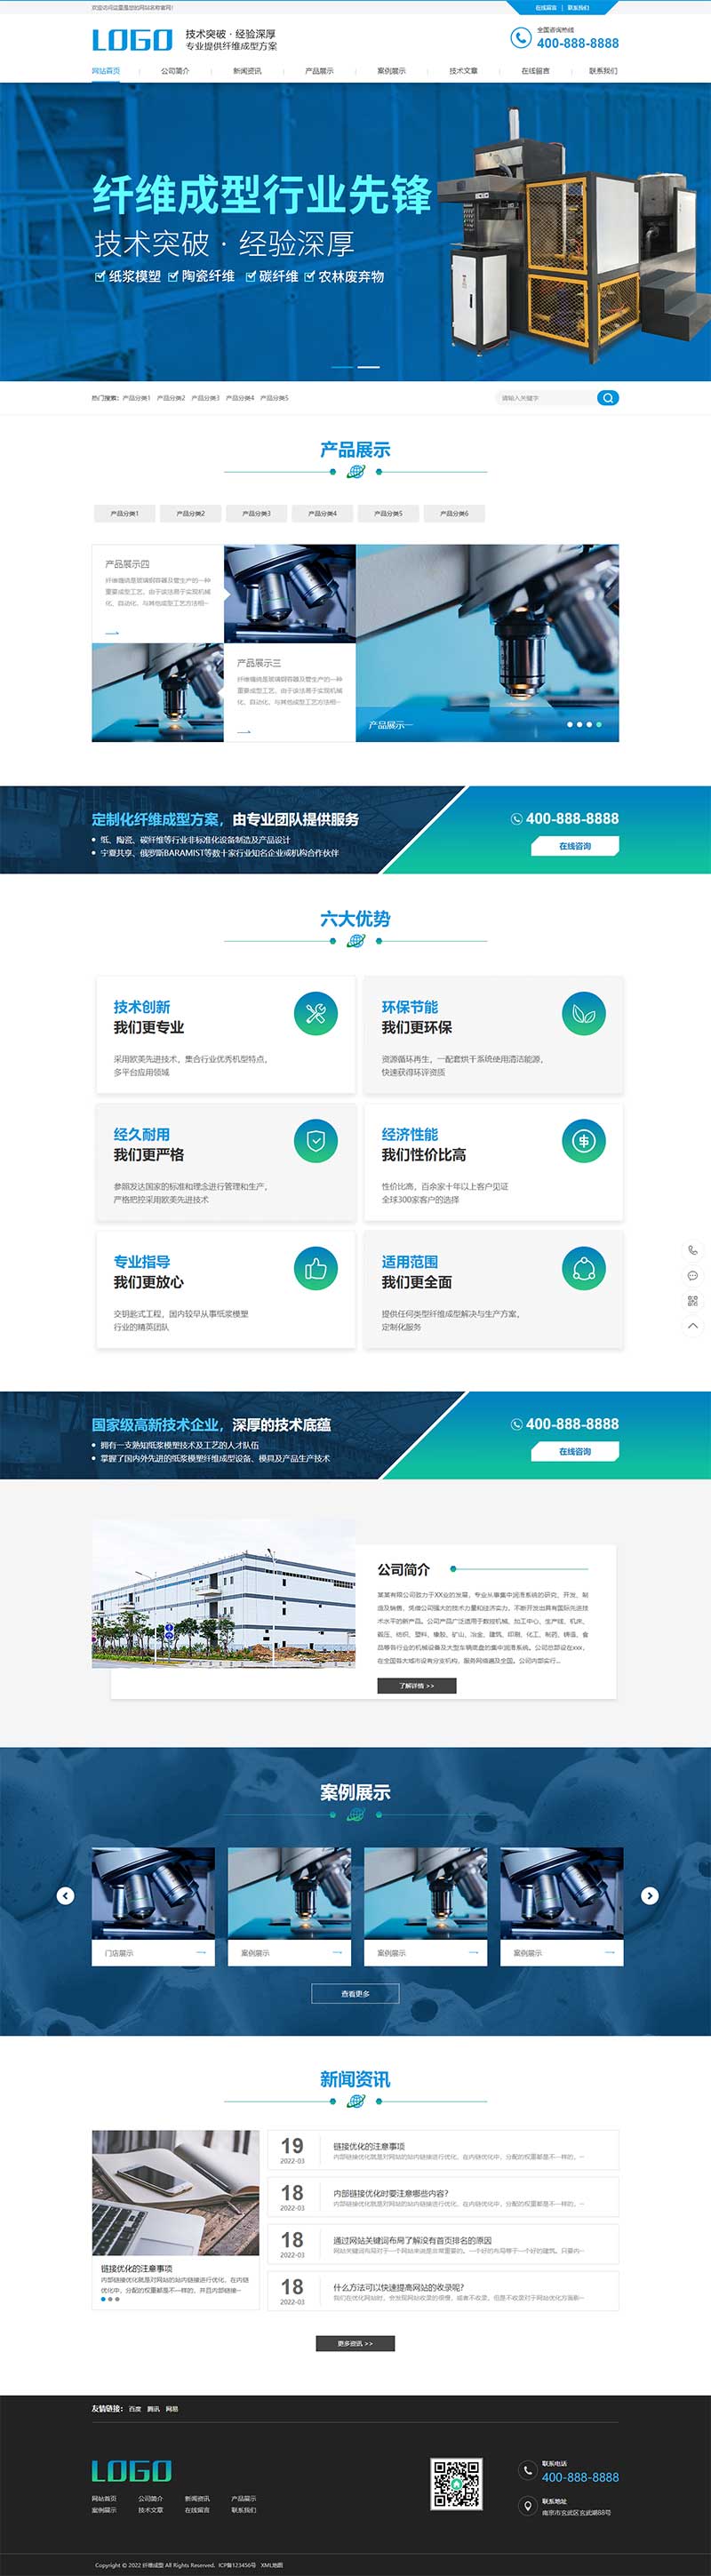 蓝色营销型纸浆模塑碳纤维机器网站源码(PC+WAP)纤维成型行业设备pbootcms网站模板-1